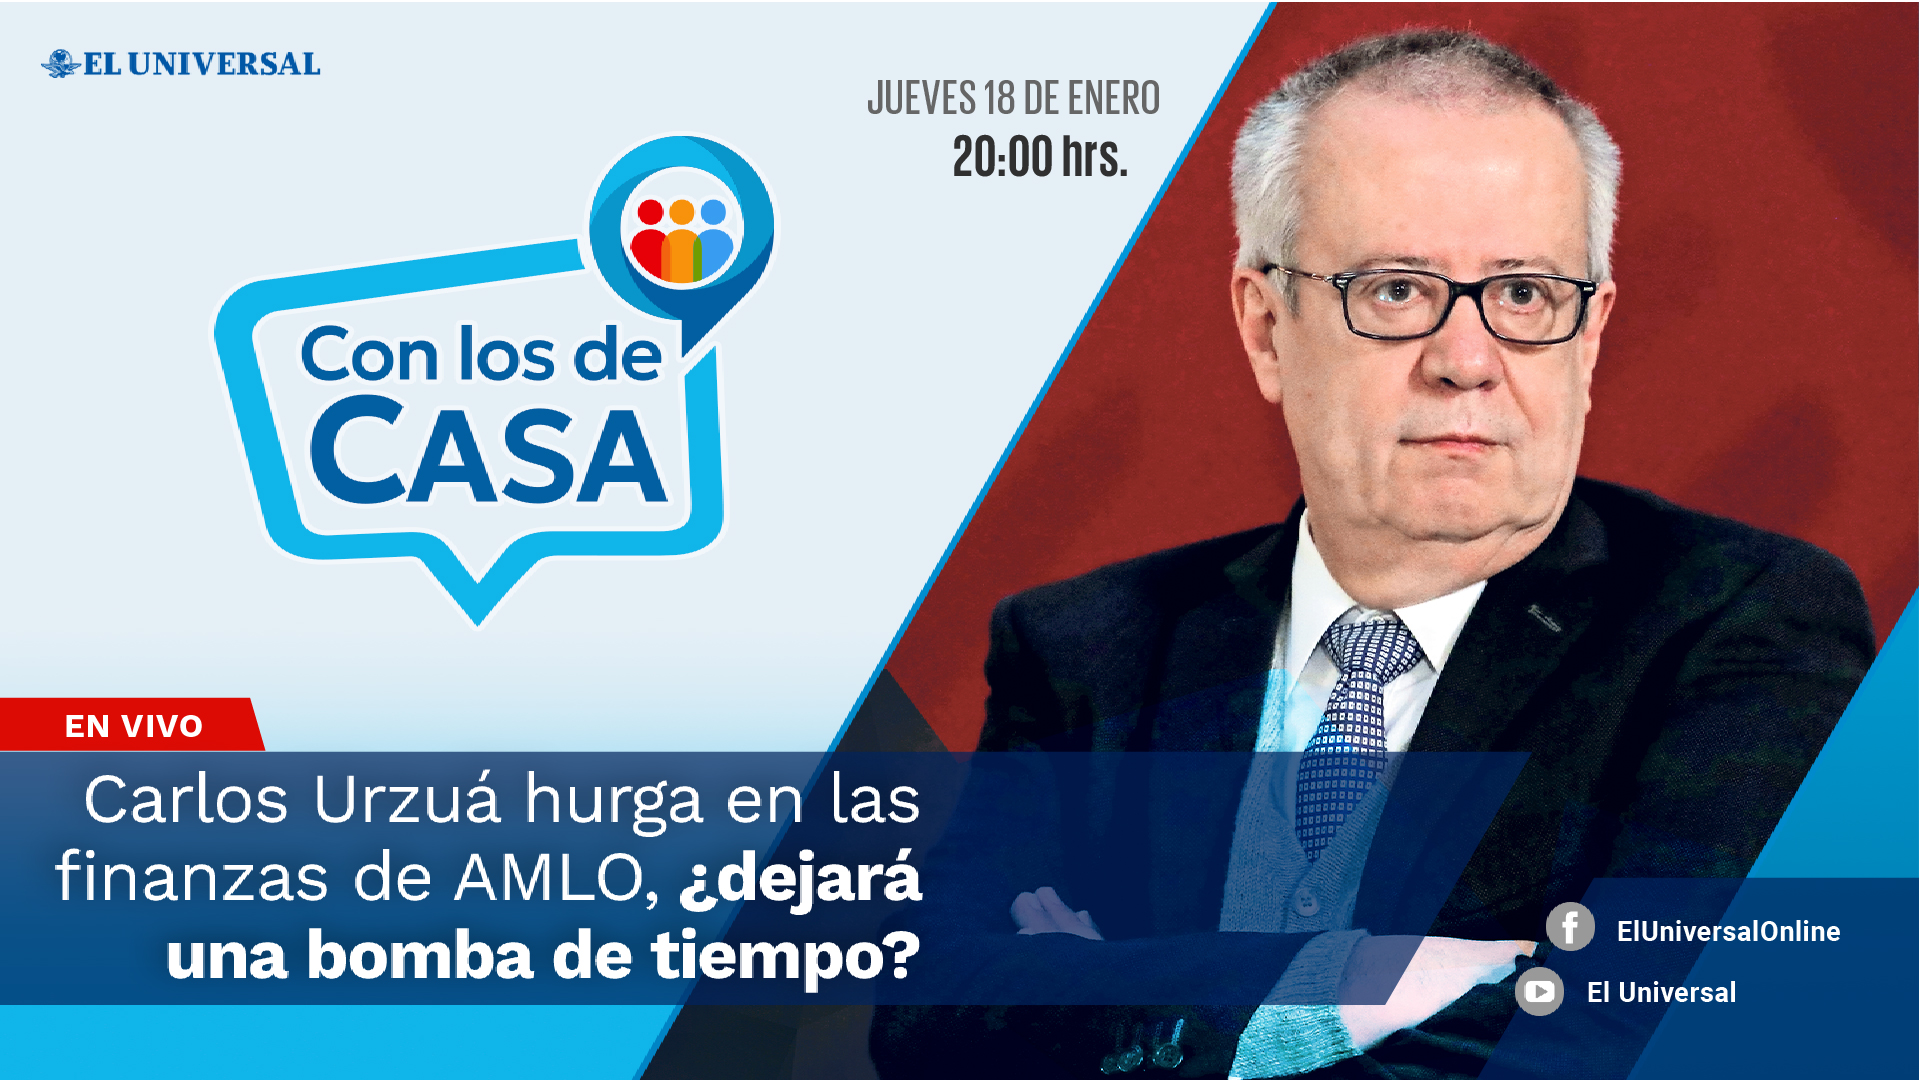 Carlos Urzúa hurga en las finanzas de AMLO, ¿dejará una bomba de tiempo? Con los de Casa